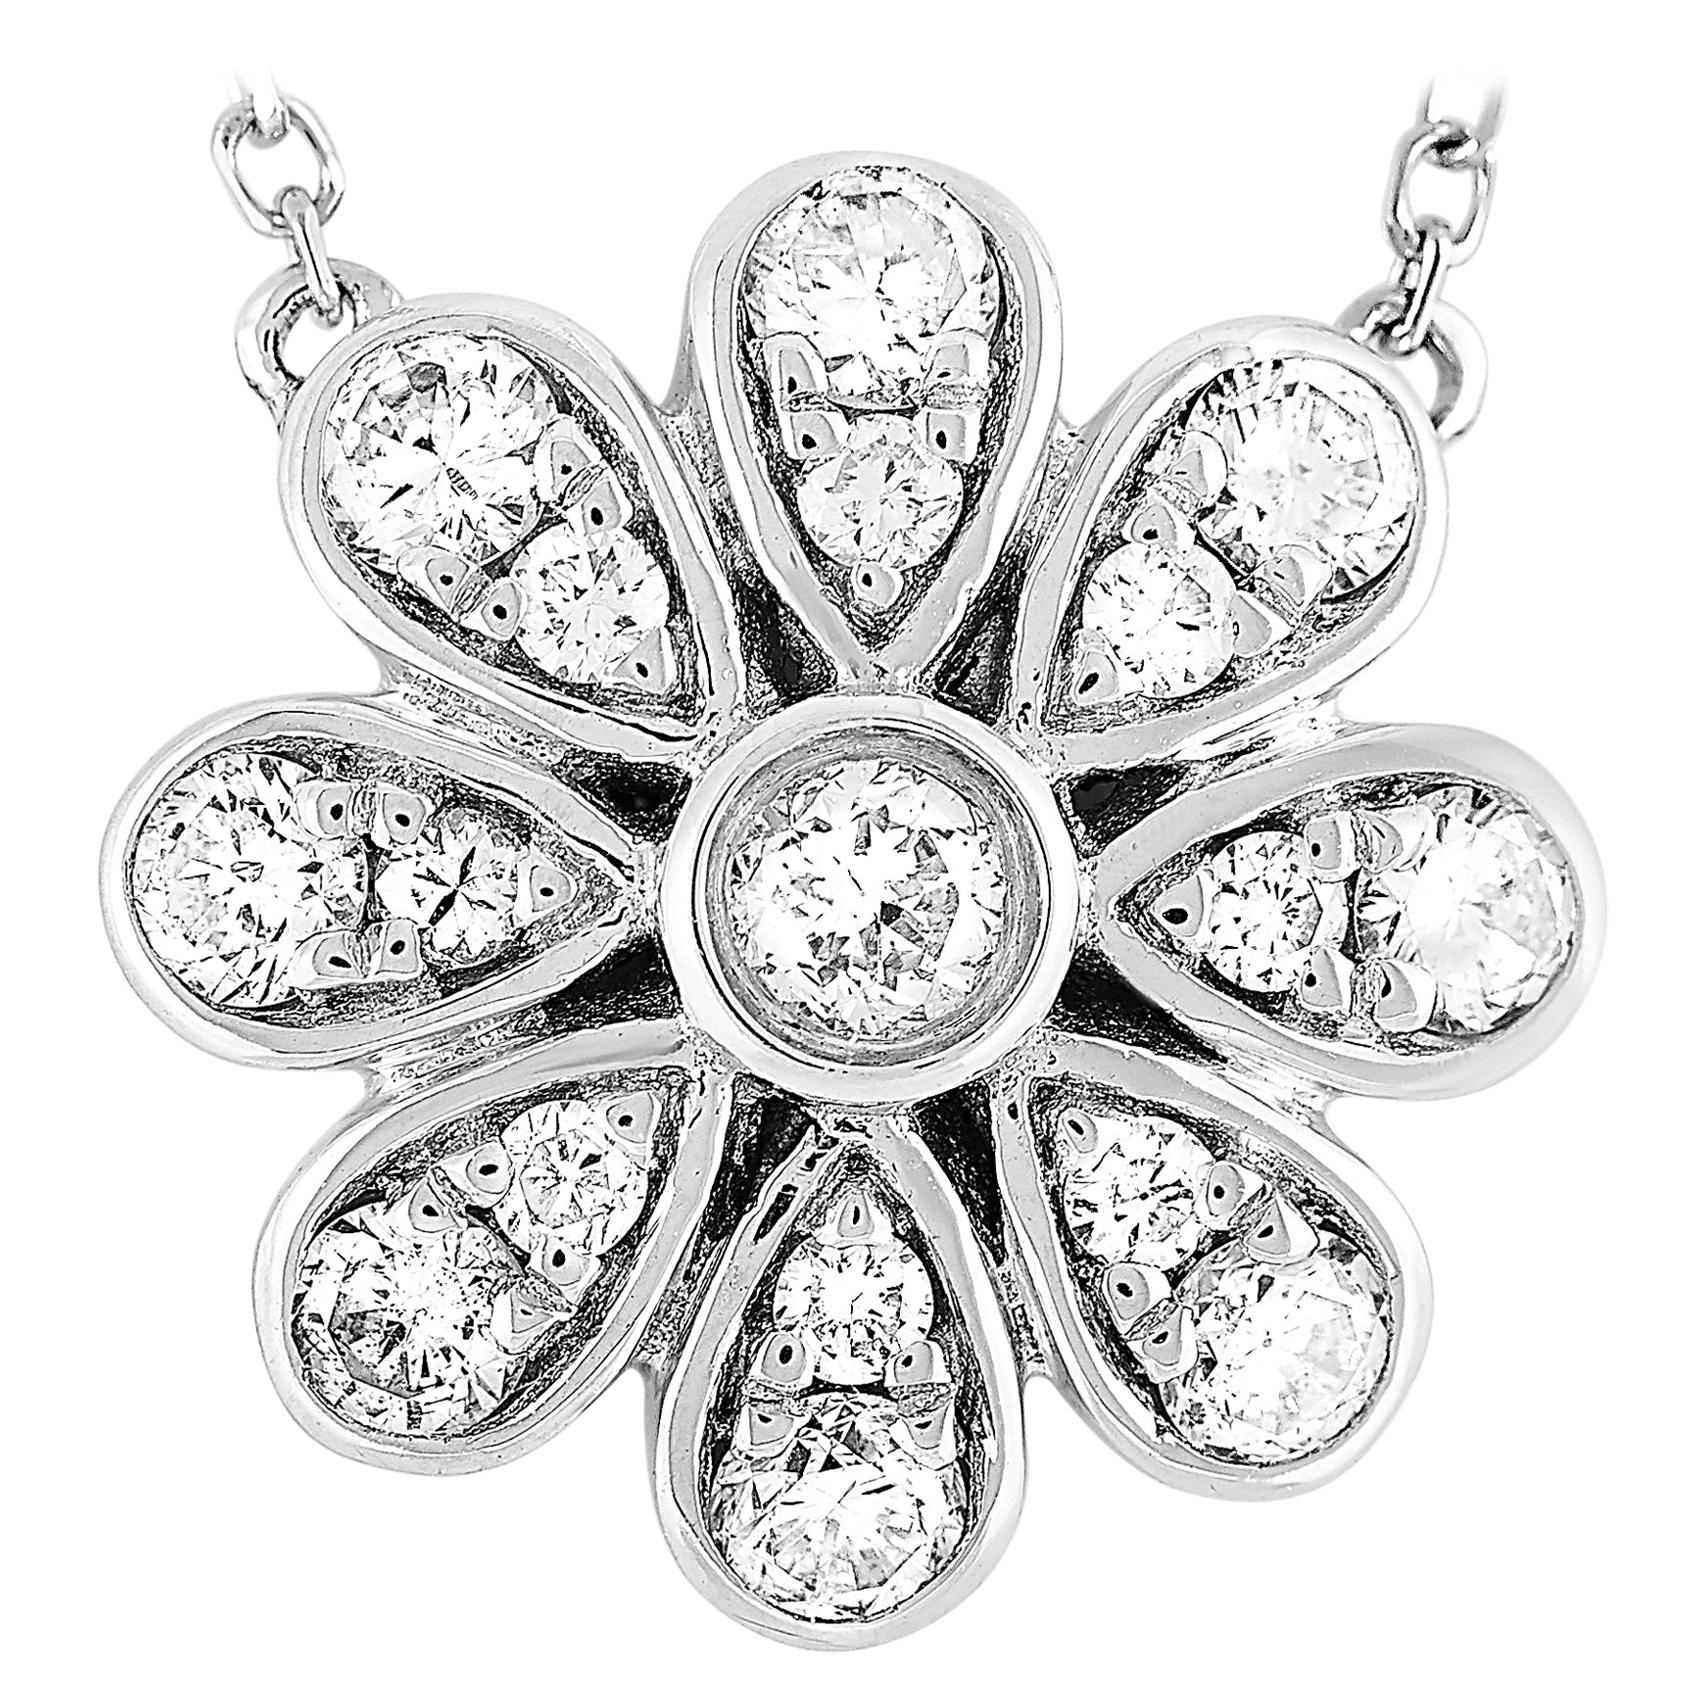 LB Exclusive 18 Karat White Gold 0.35 Carat Diamond Pave Flower Pendant Necklace